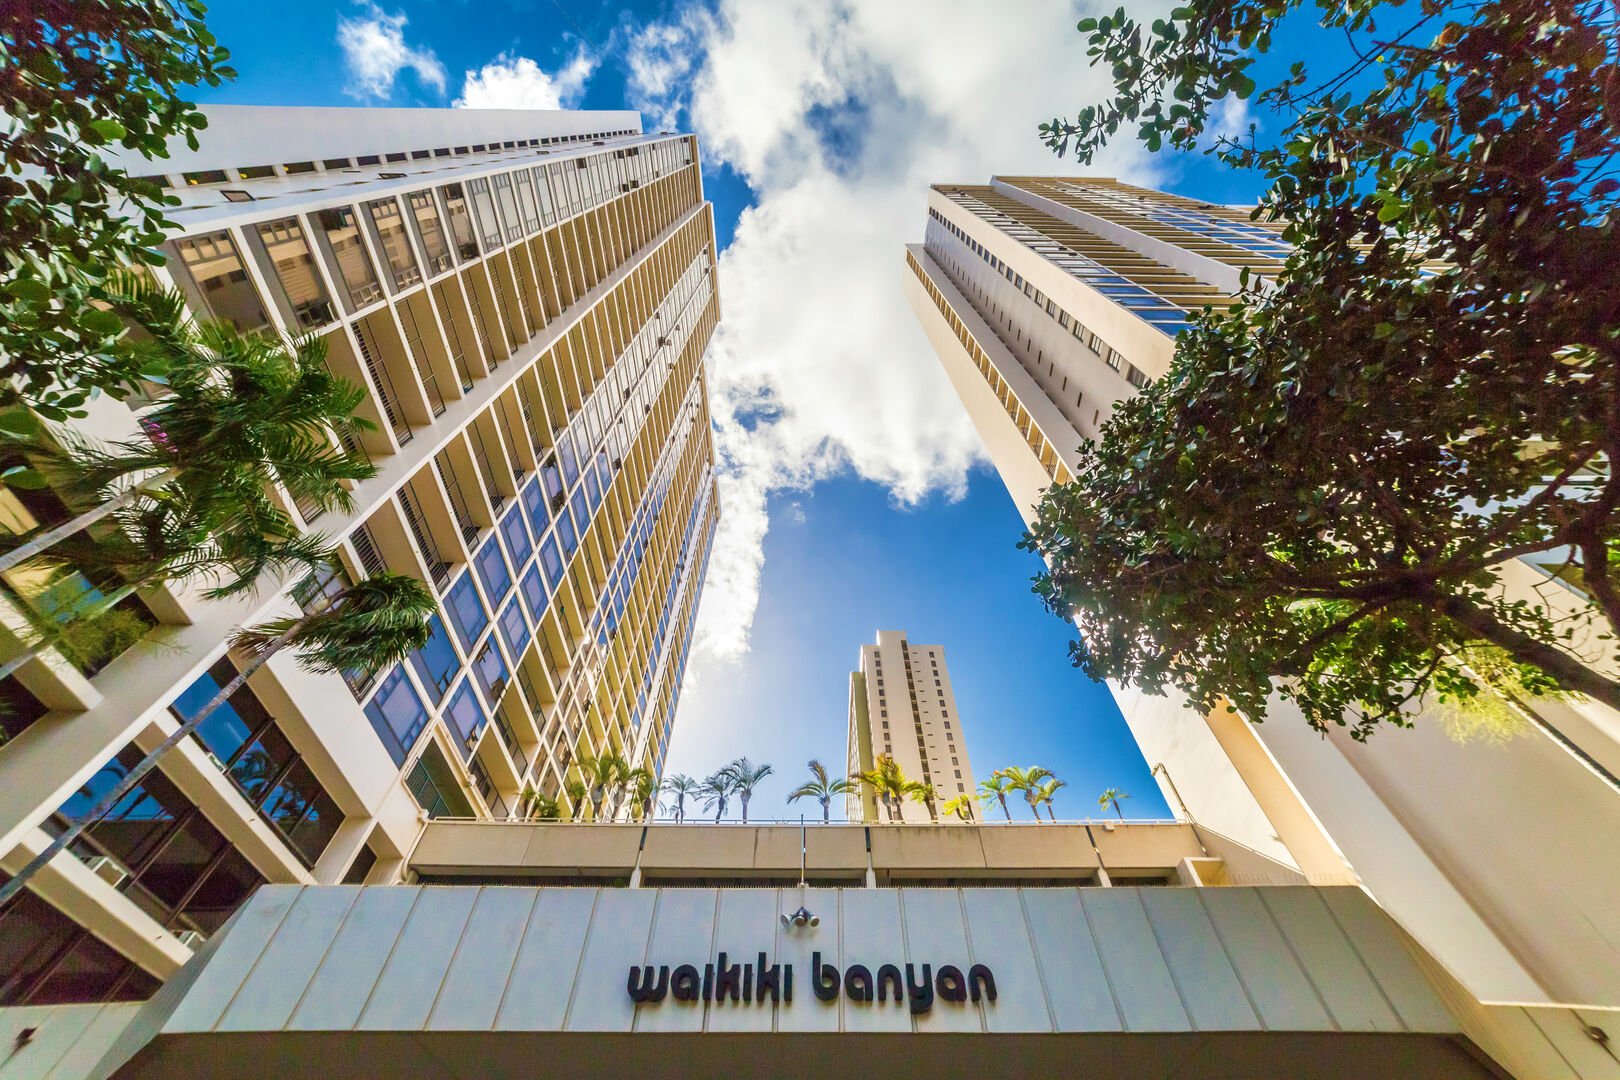 Waikiki Banyan tower